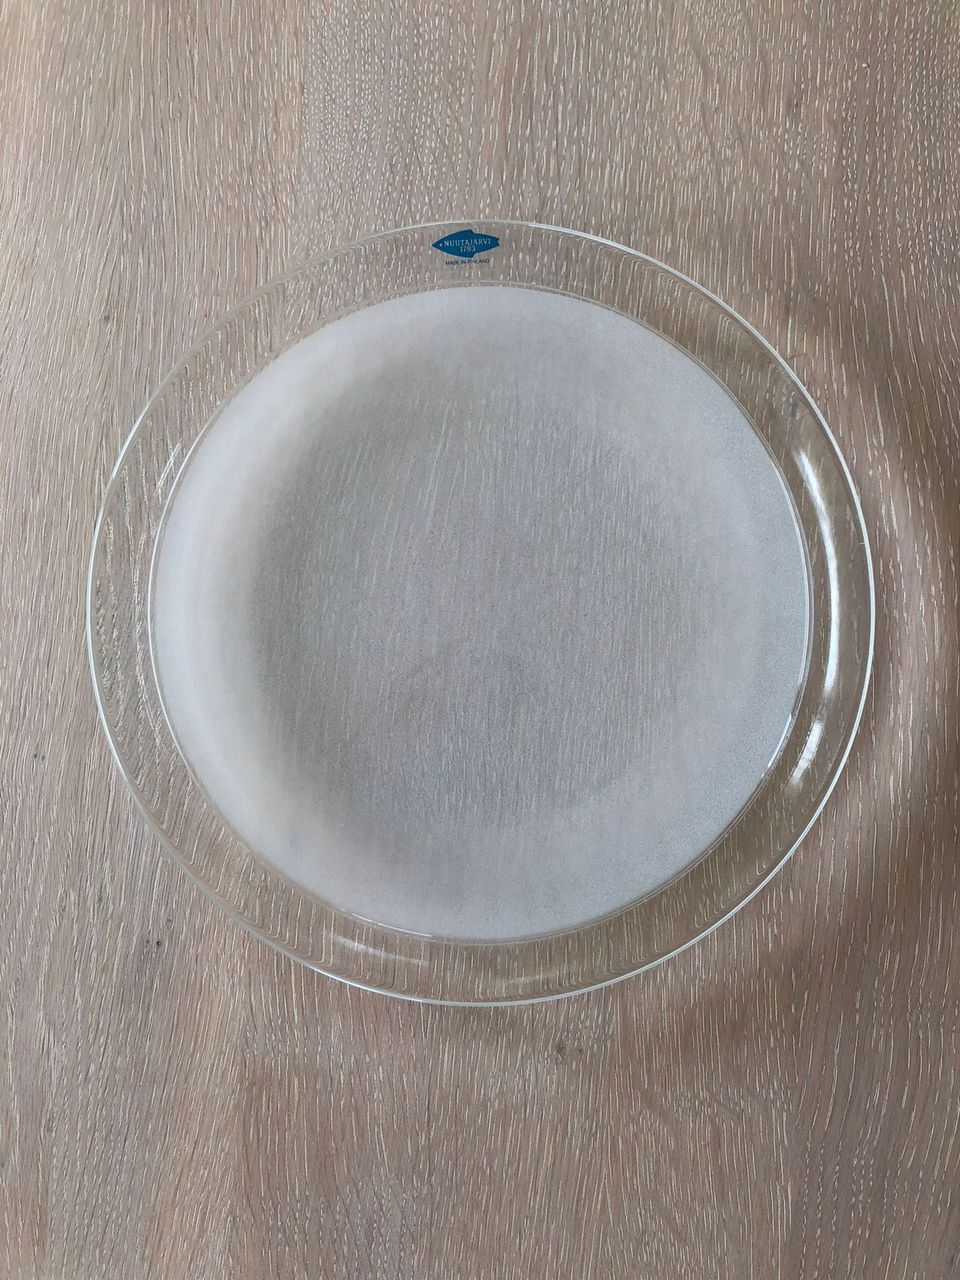 NUUTAJÄRVI Lumikuru-lautaset (8 kpl)